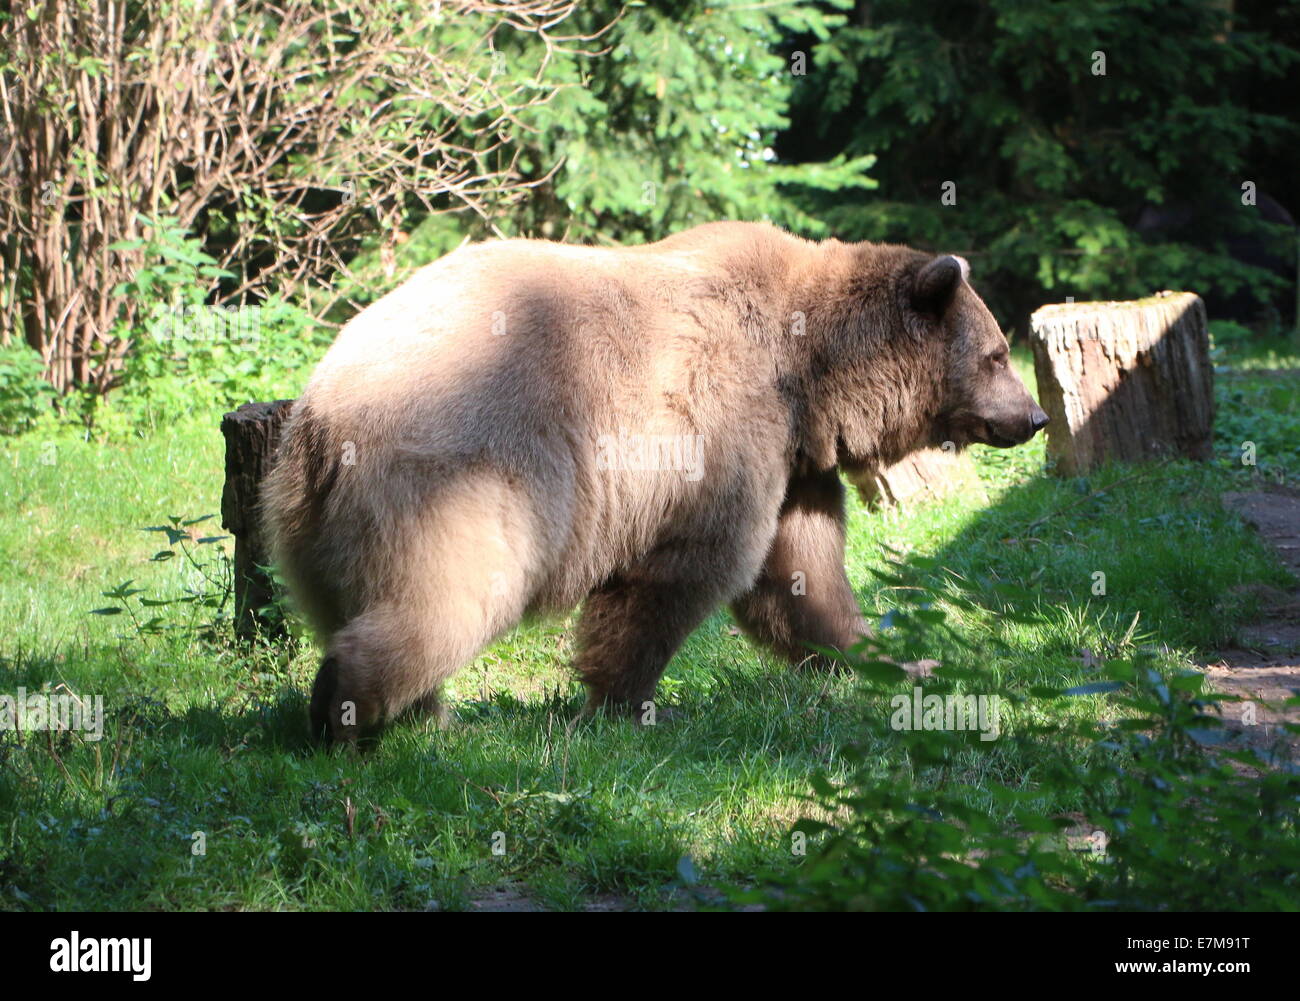 Eurasian orso bruno a camminare in un ambiente naturale Foto Stock